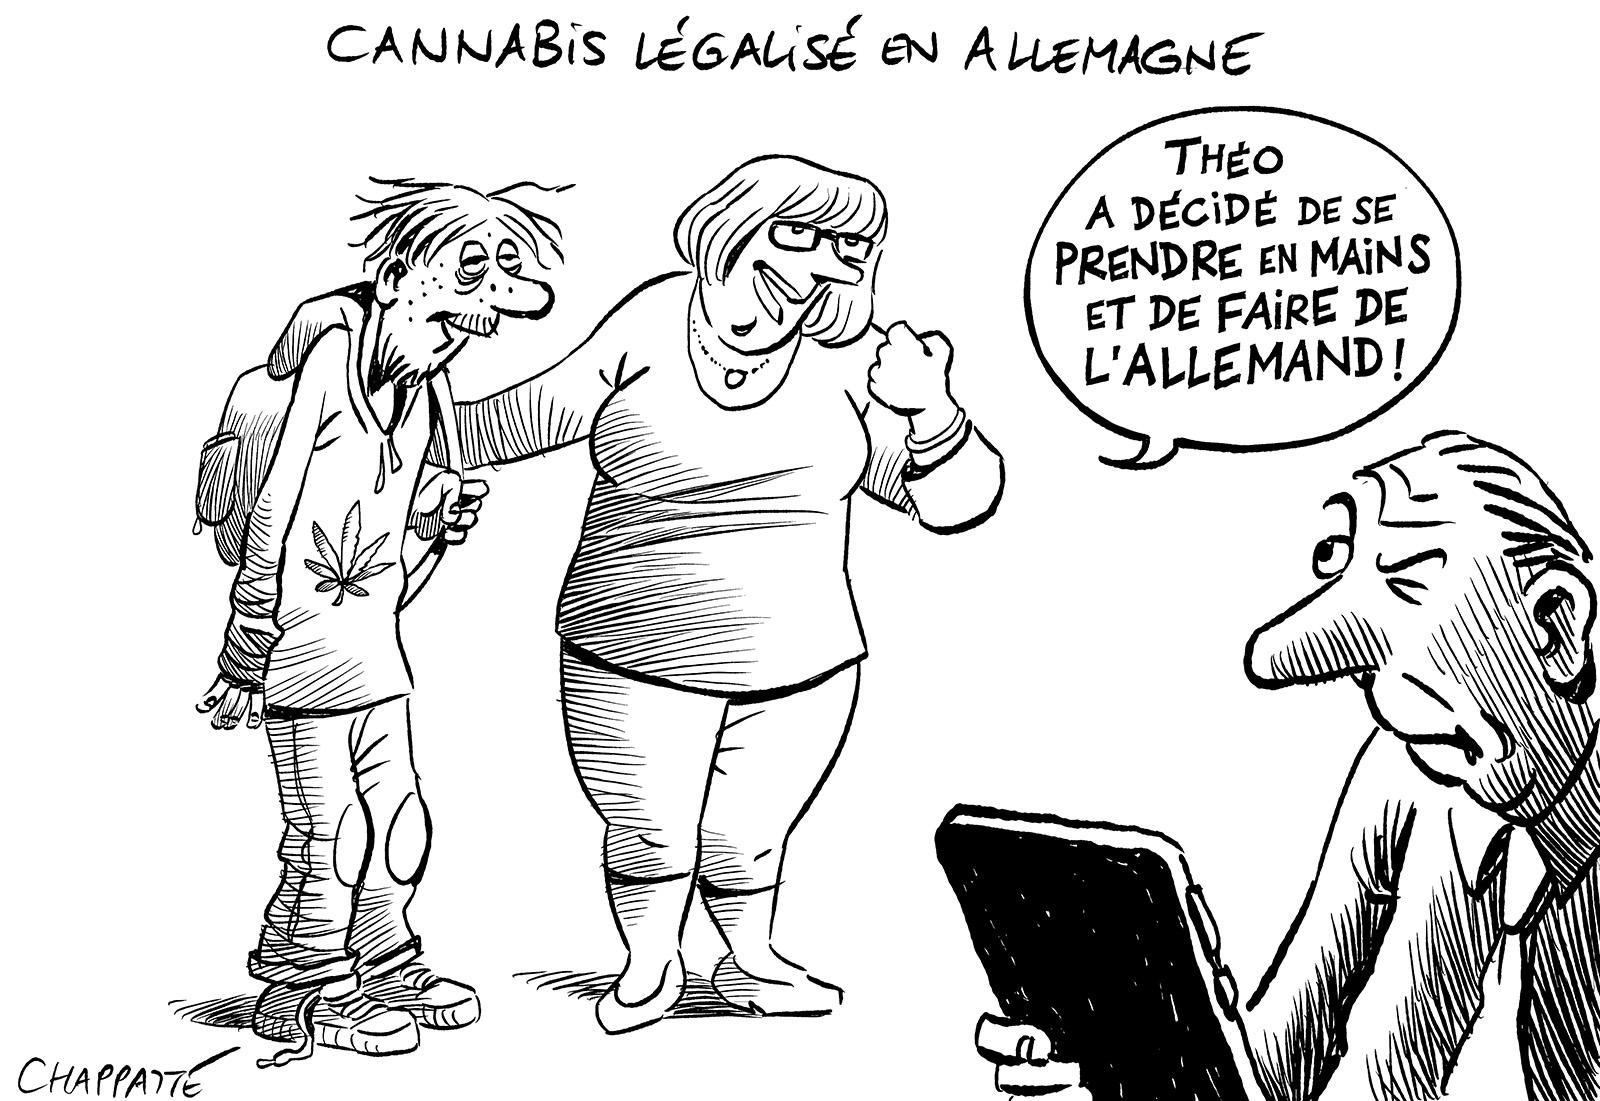 Cannabis légalisé en Allemagne